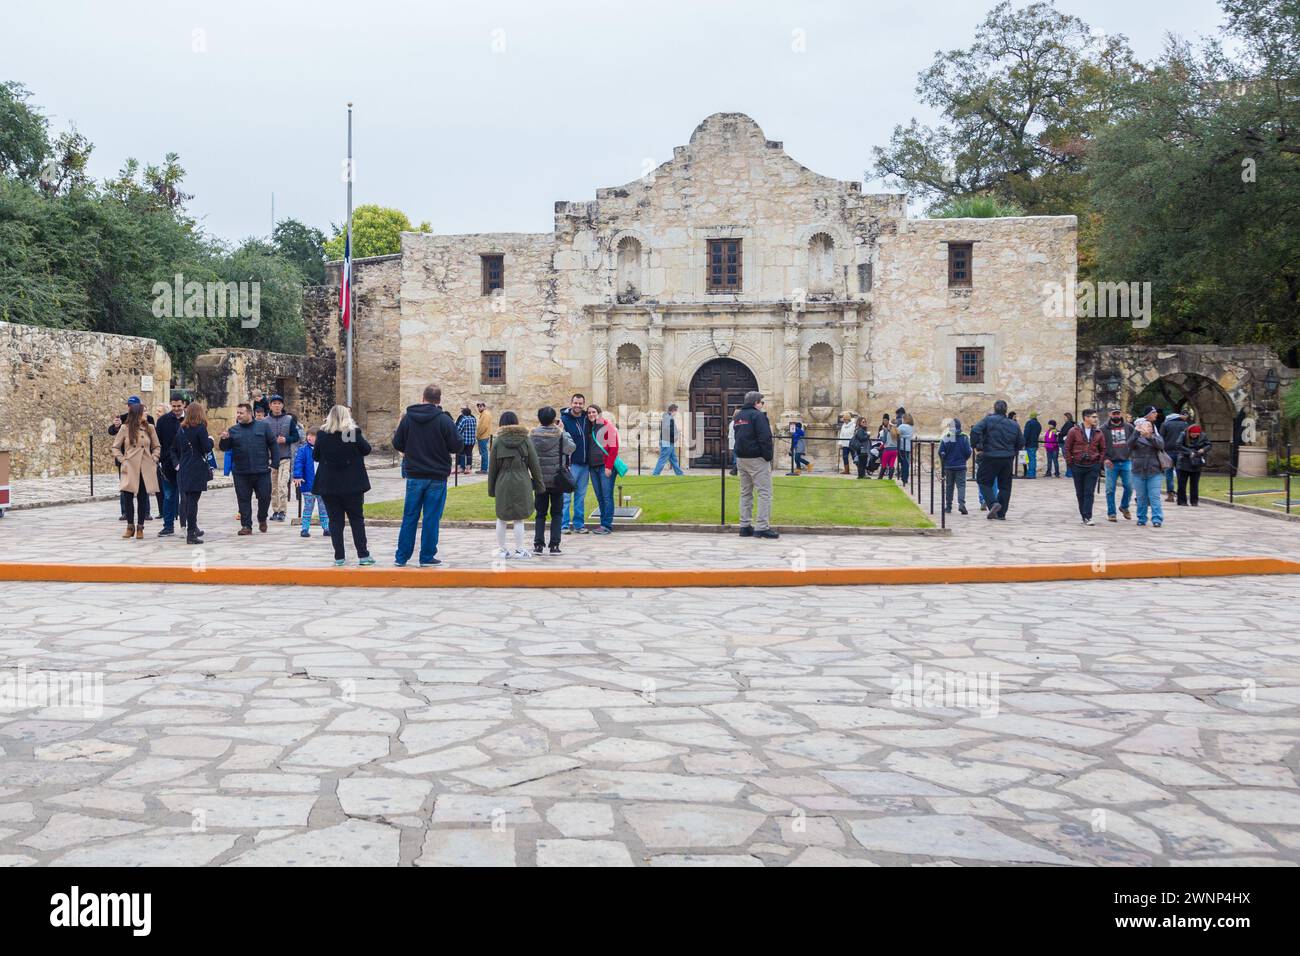 La mission espagnole historique d'Alamo dans le centre-ville de San Antonio, Texas Banque D'Images